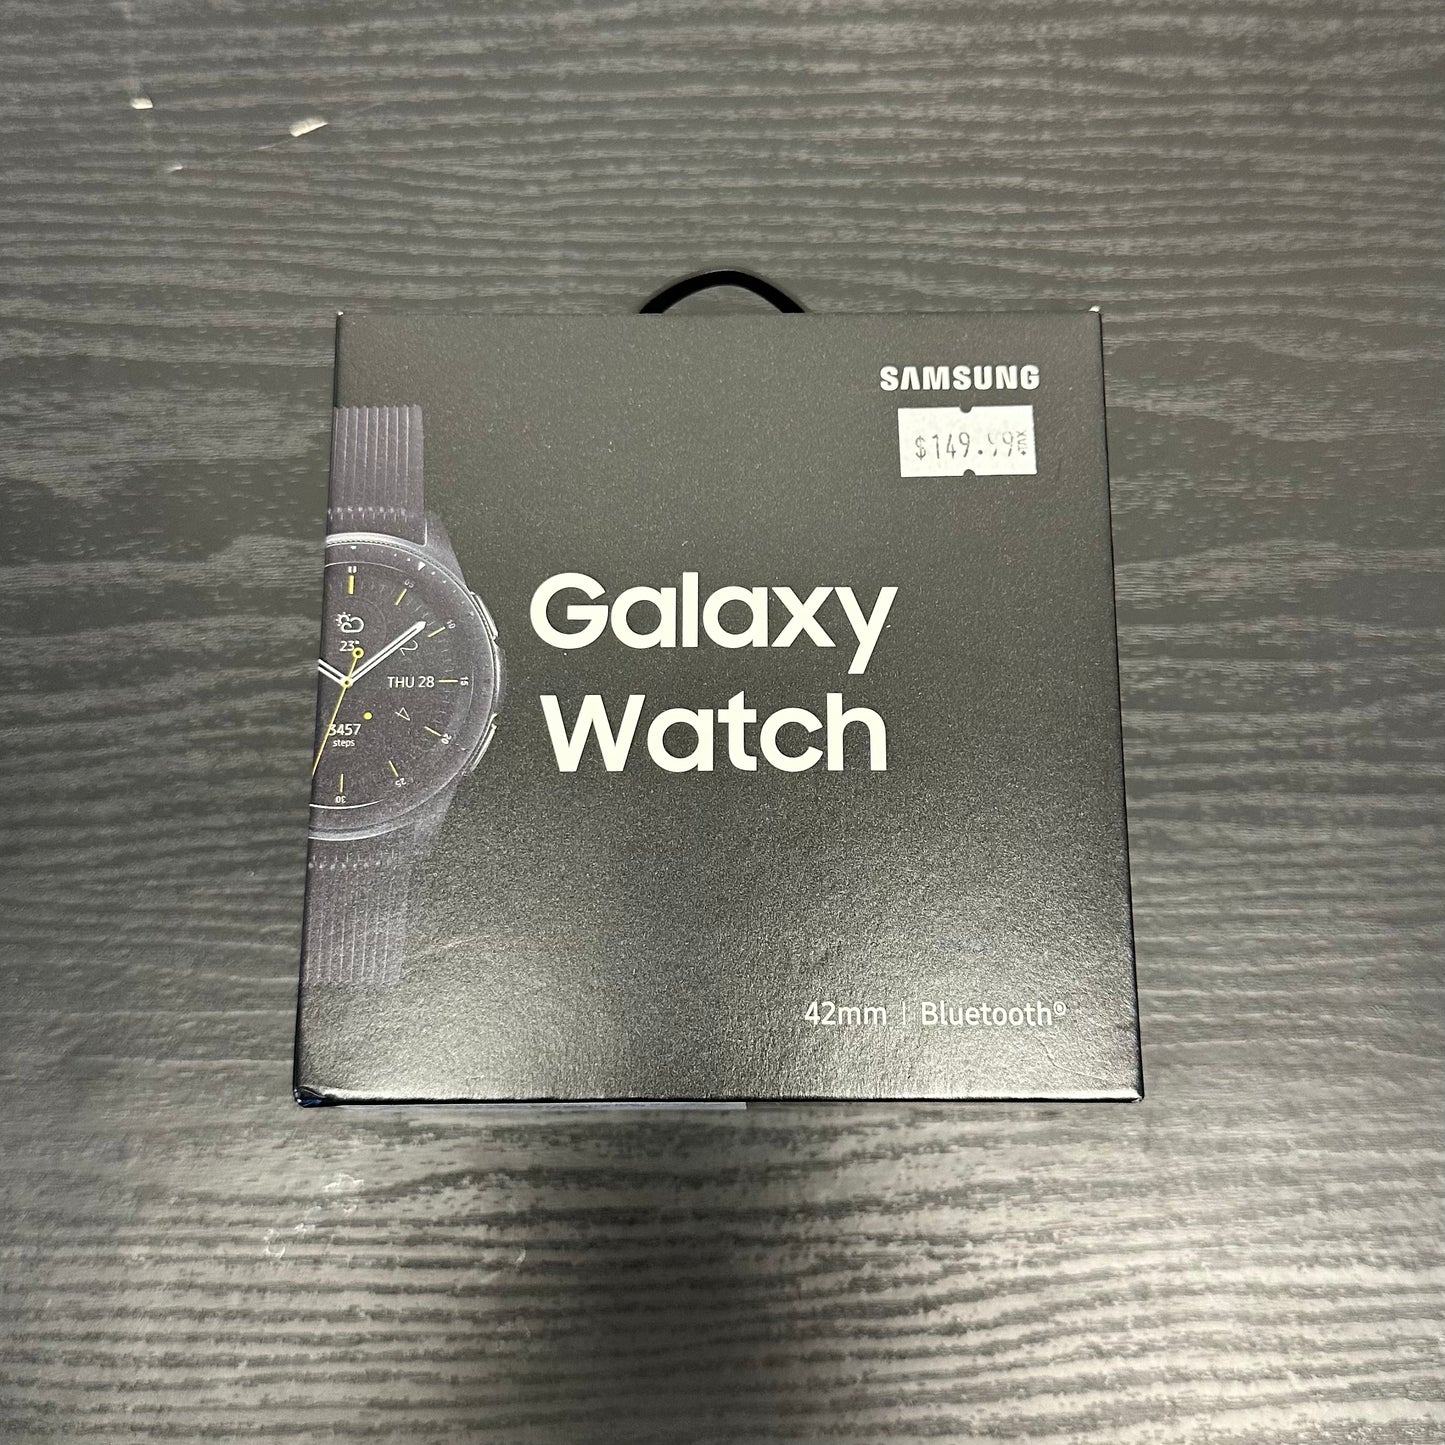 Galaxy Watch, 42mm, Black, WiFi + GPS - Open Box